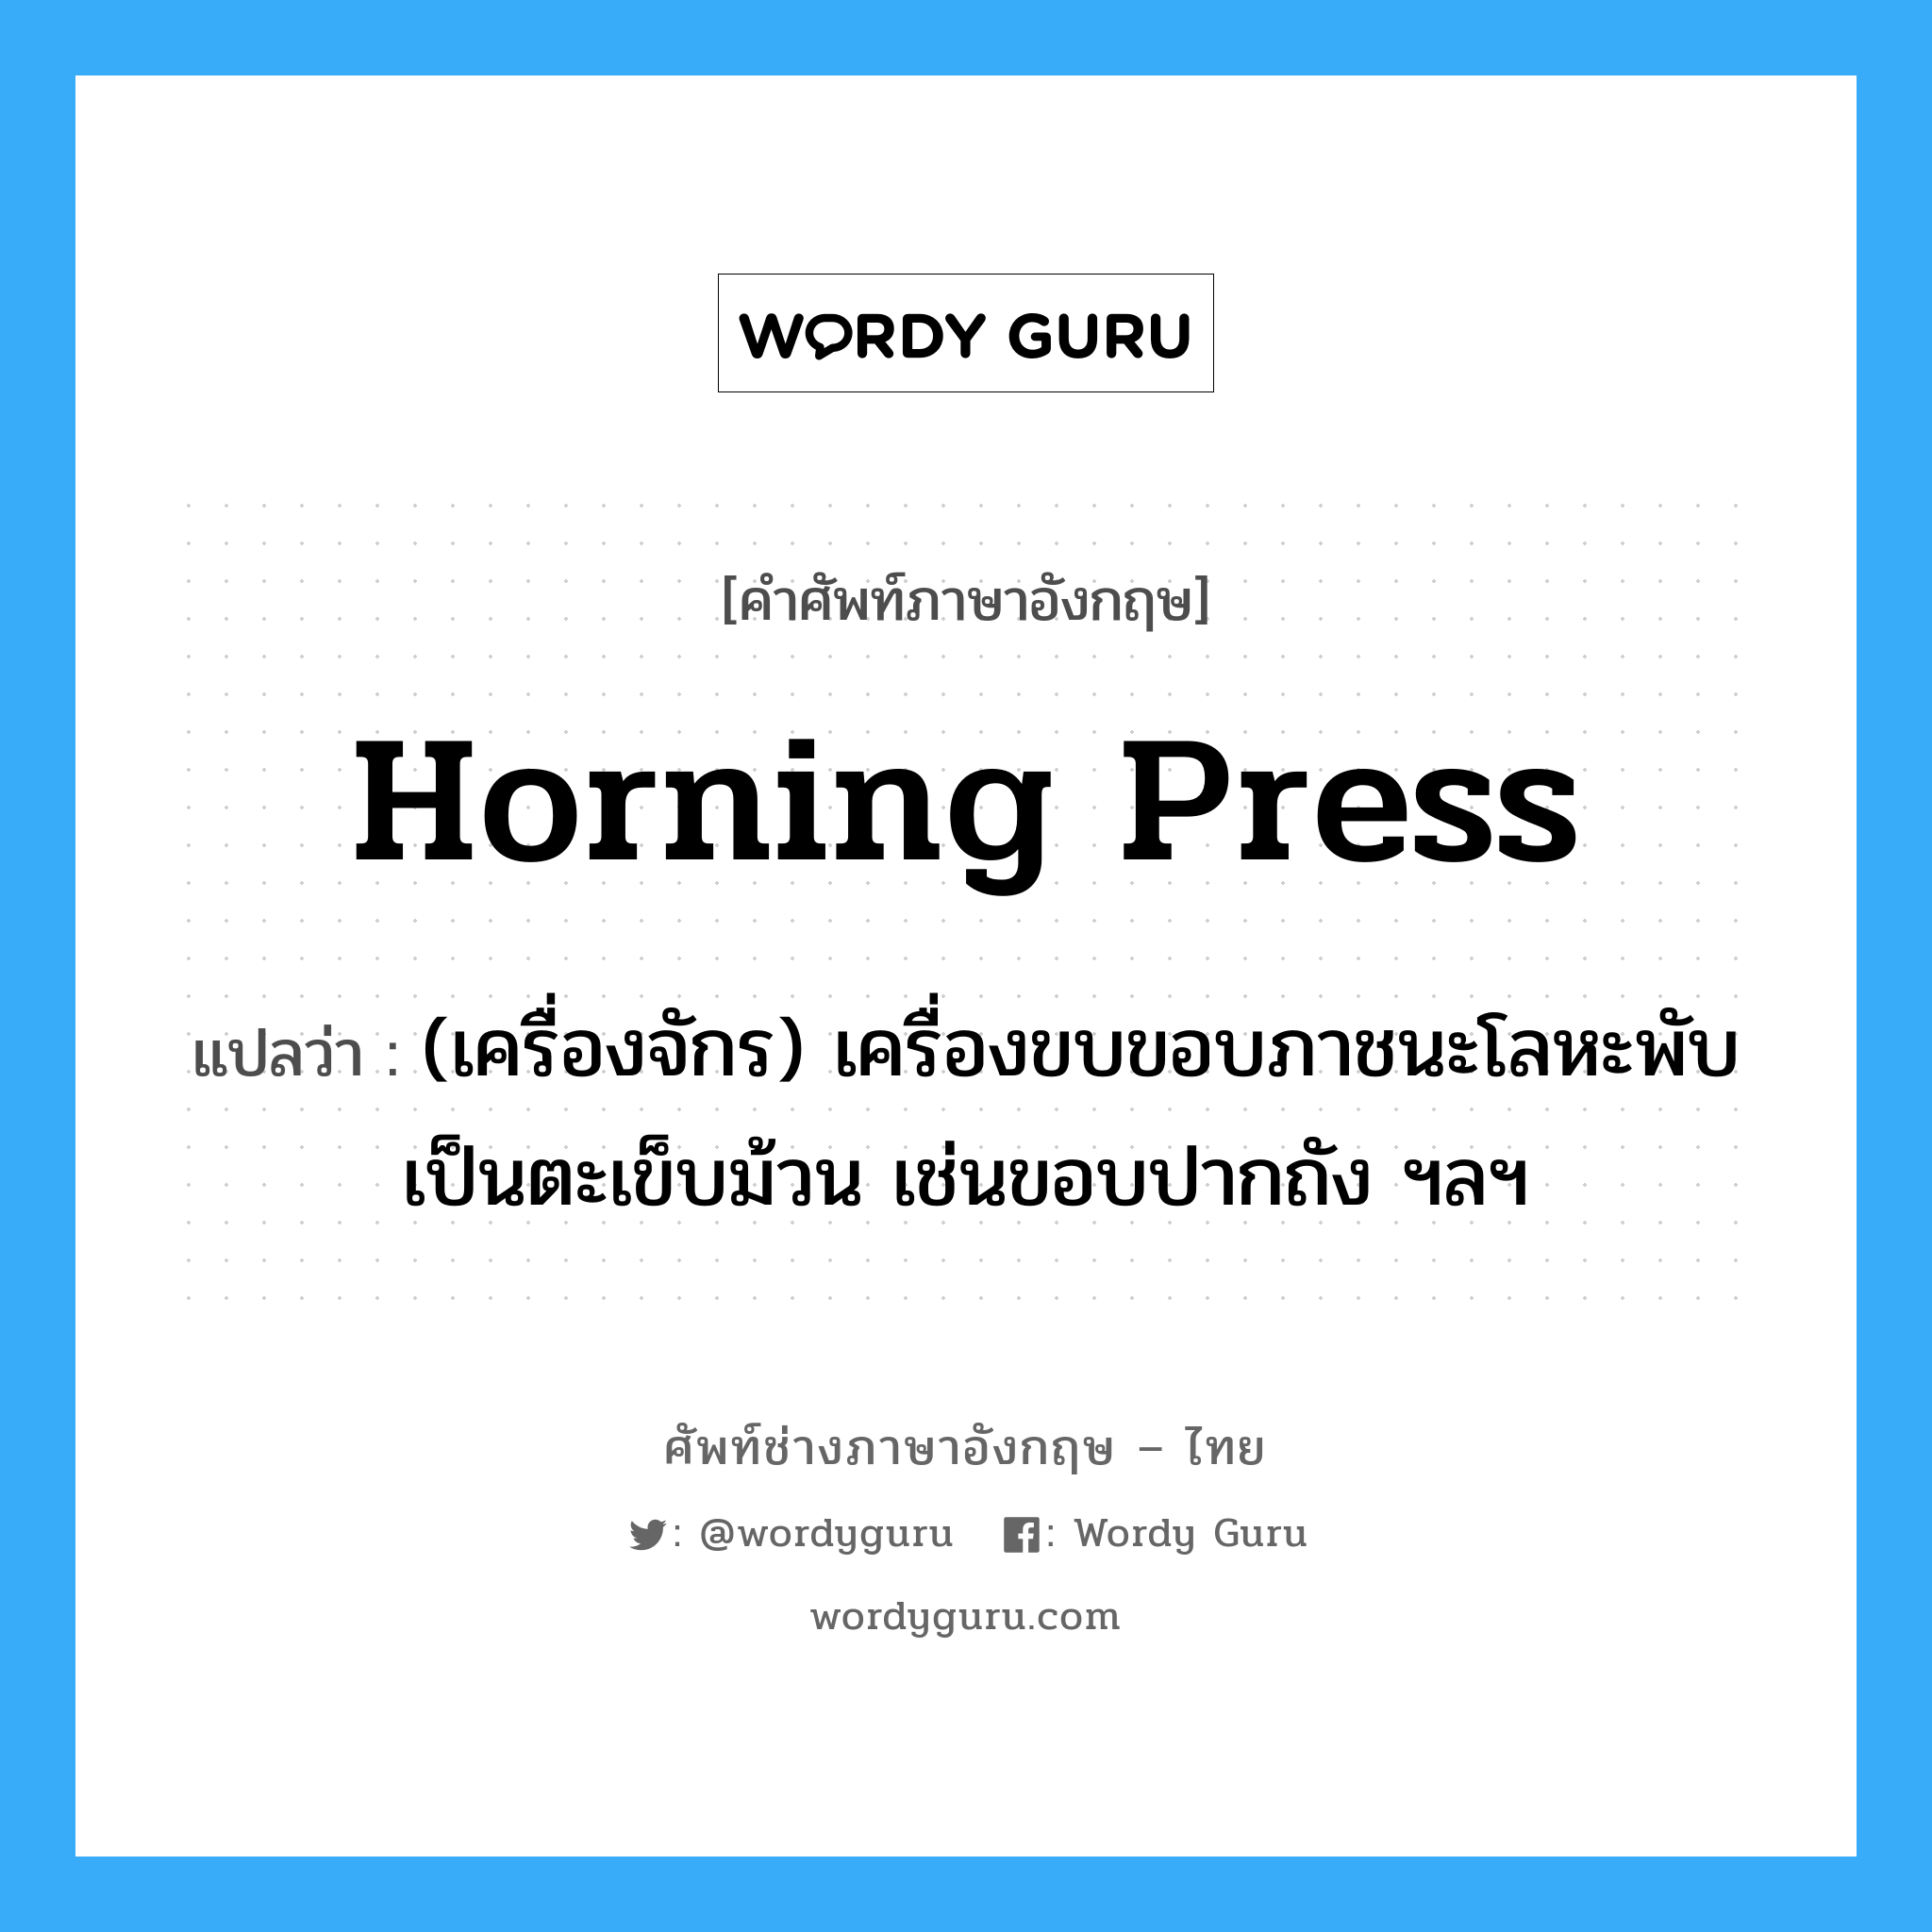 horning press แปลว่า?, คำศัพท์ช่างภาษาอังกฤษ - ไทย horning press คำศัพท์ภาษาอังกฤษ horning press แปลว่า (เครื่องจักร) เครื่องขบขอบภาชนะโลหะพับเป็นตะเข็บม้วน เช่นขอบปากถัง ฯลฯ